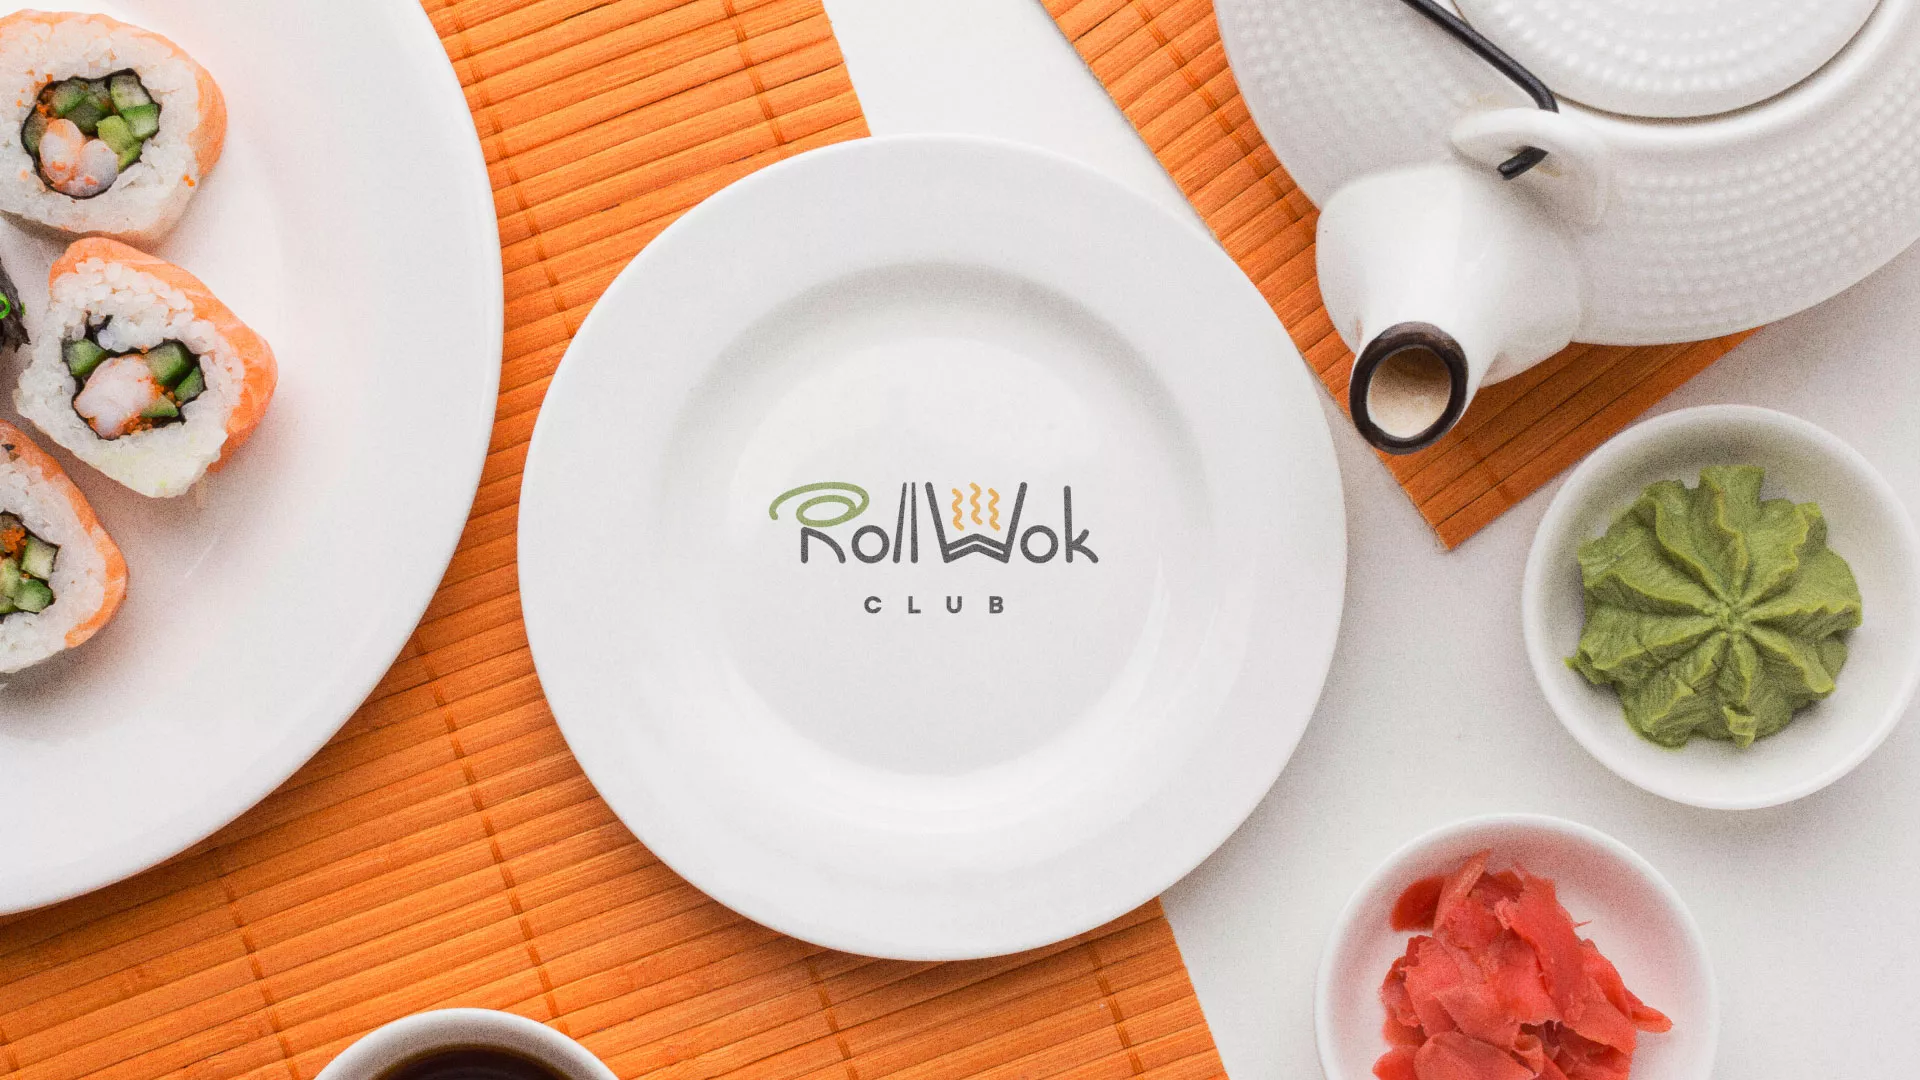 Разработка логотипа и фирменного стиля суши-бара «Roll Wok Club» в Новохопёрске